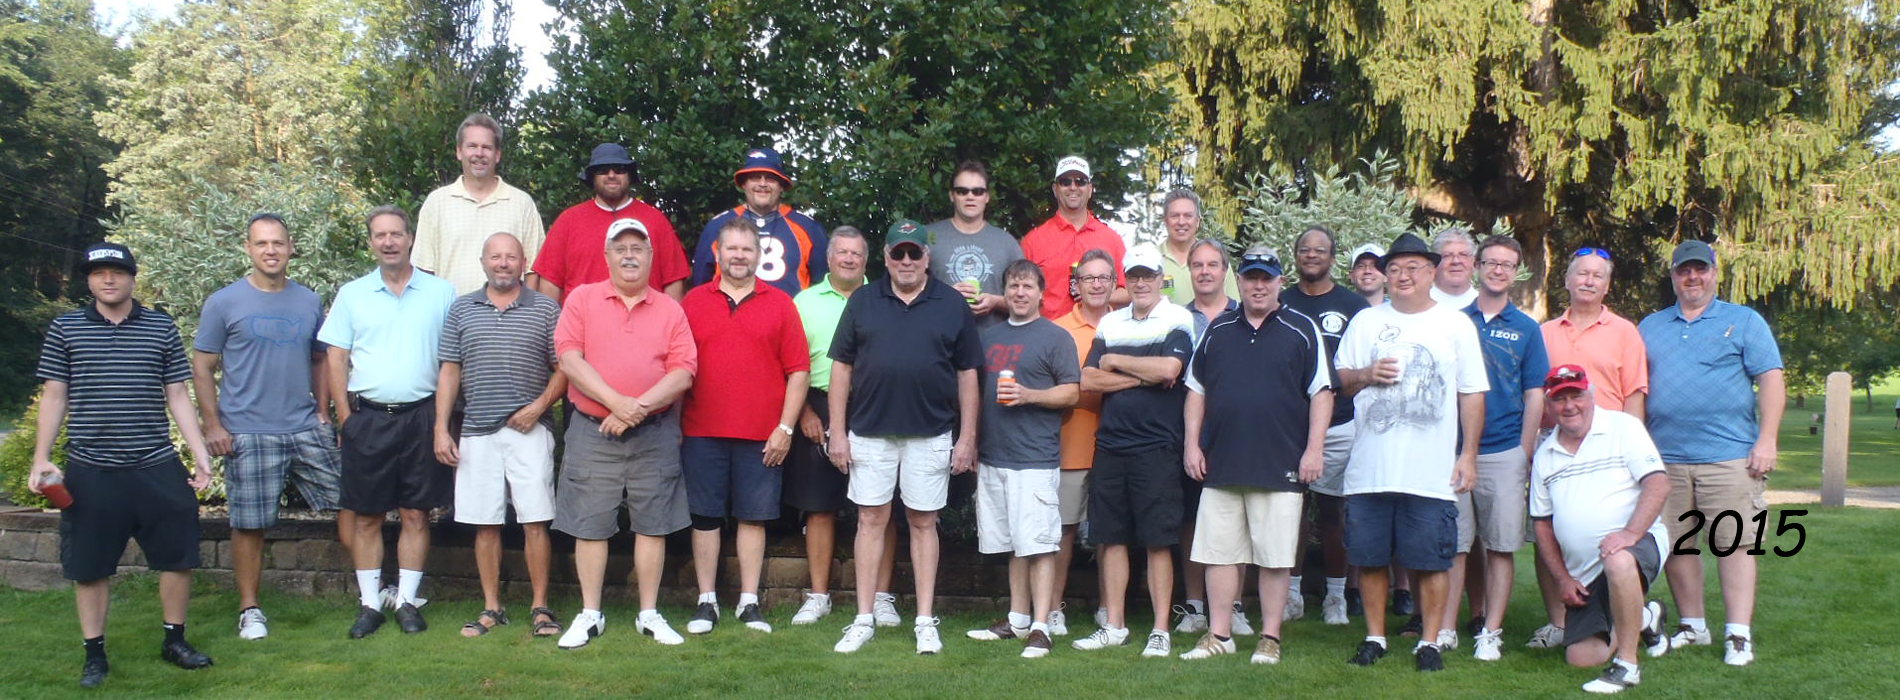 BABES Golf Tournament - 2015